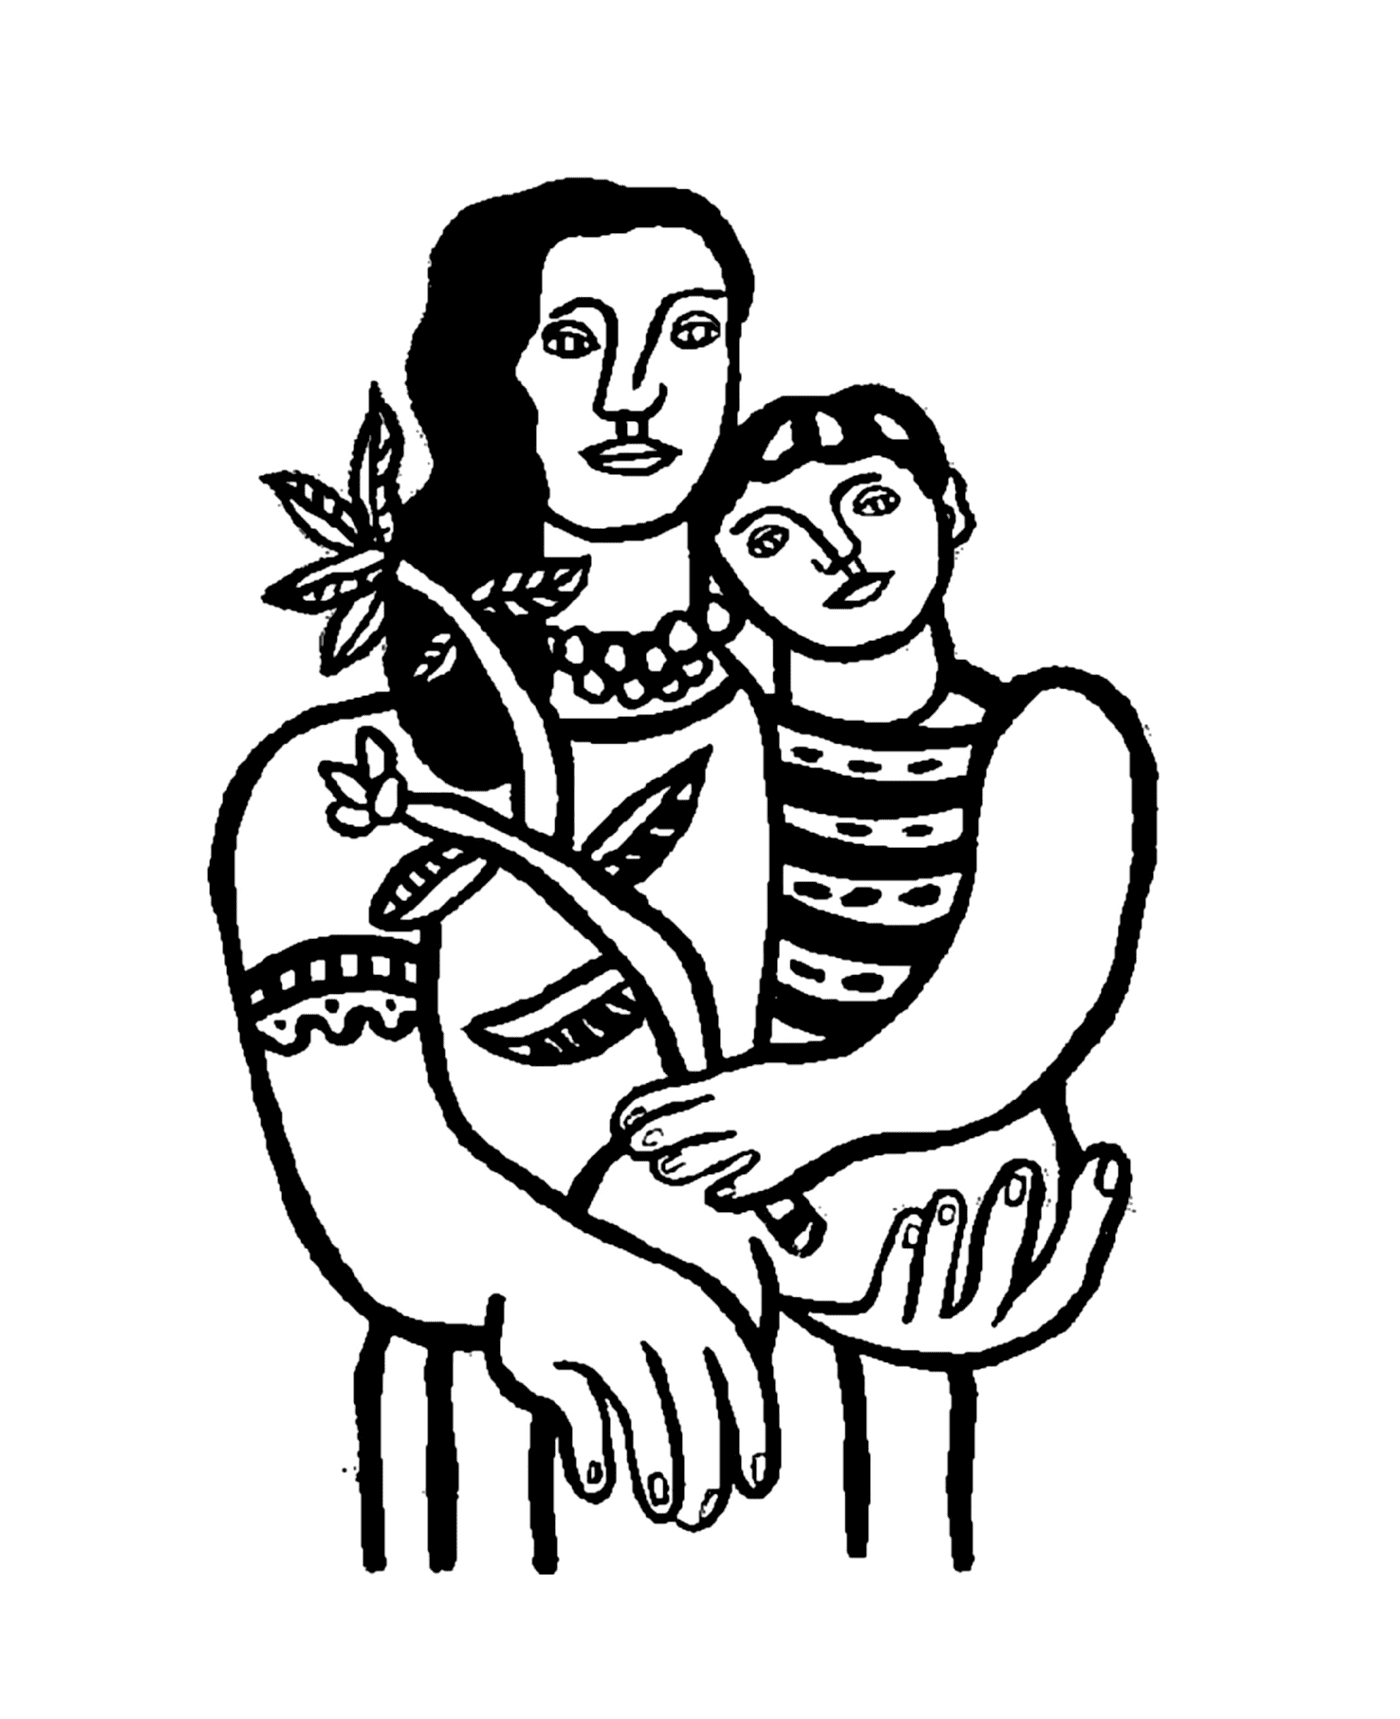  据Fernand Léger称,一名妇女抚养一名子女 